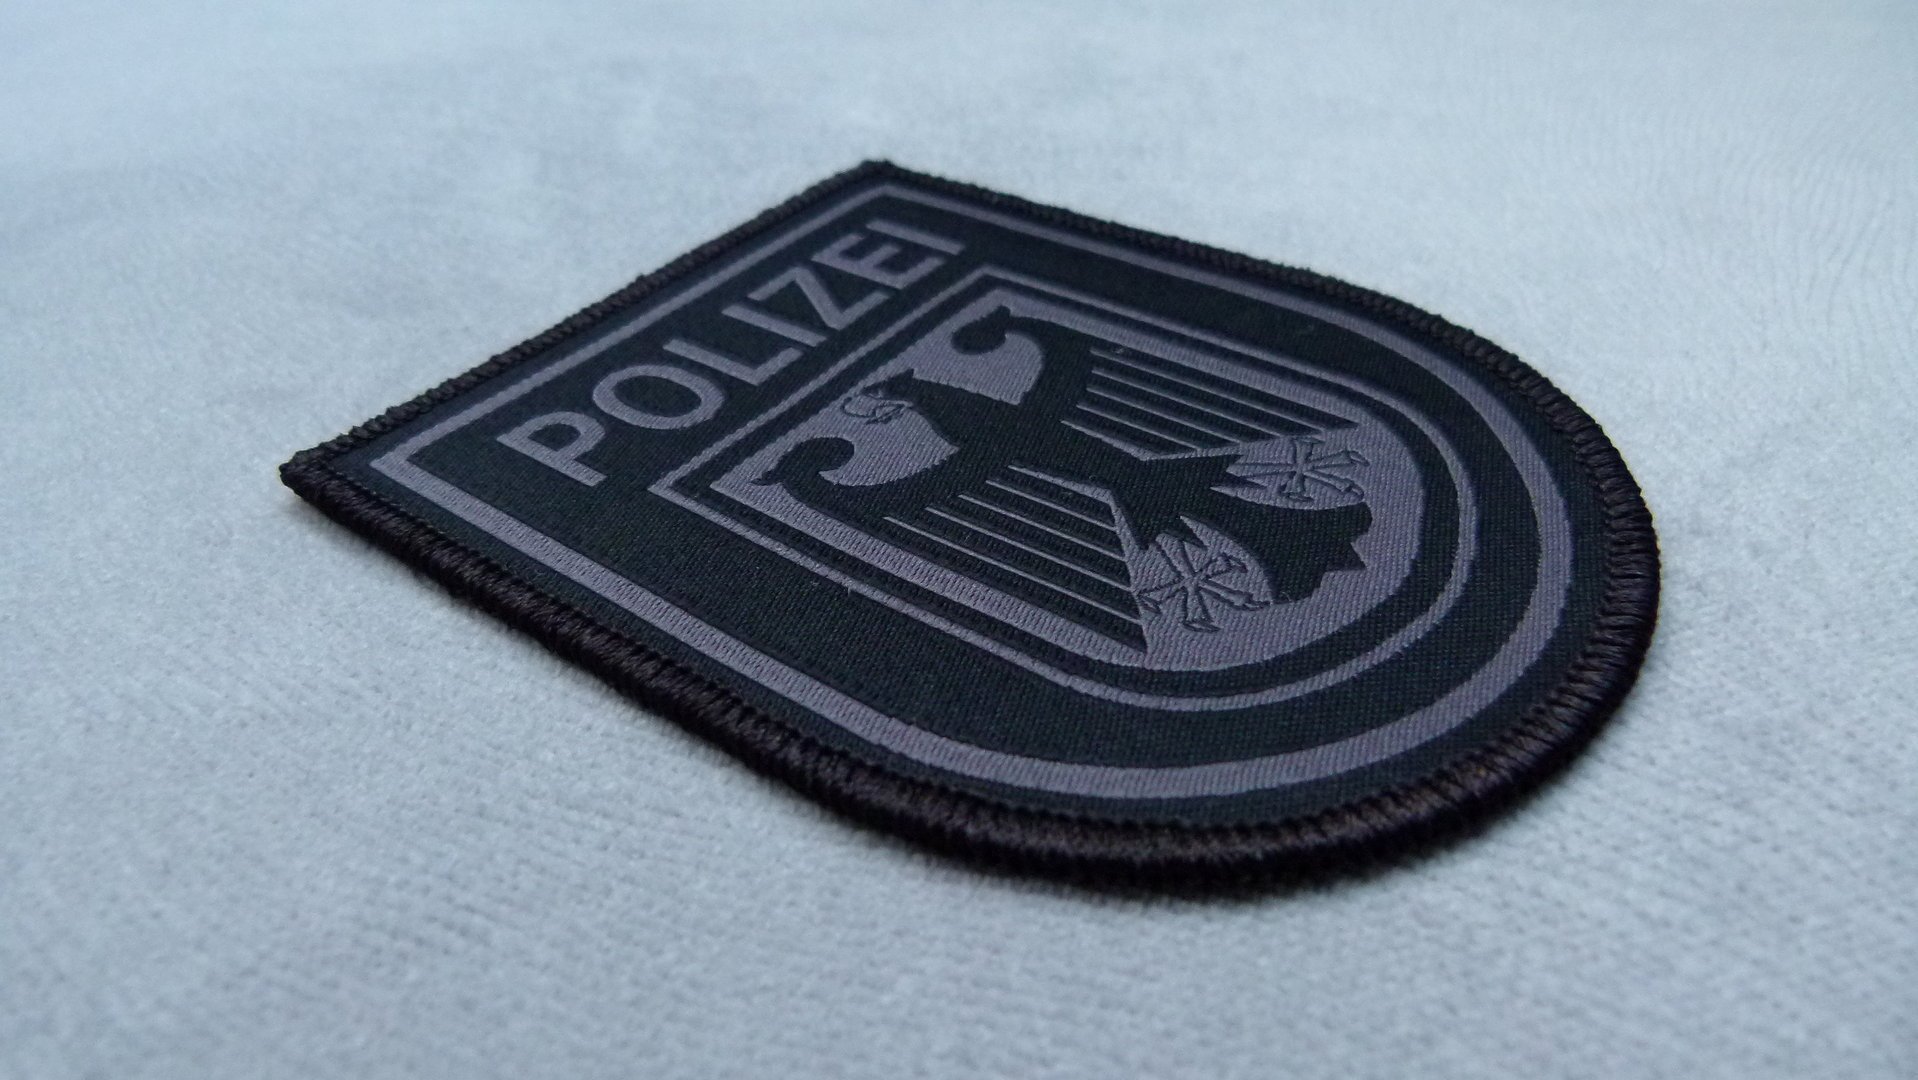 Bundespolizei Black Ops Rubber Klett Patch 